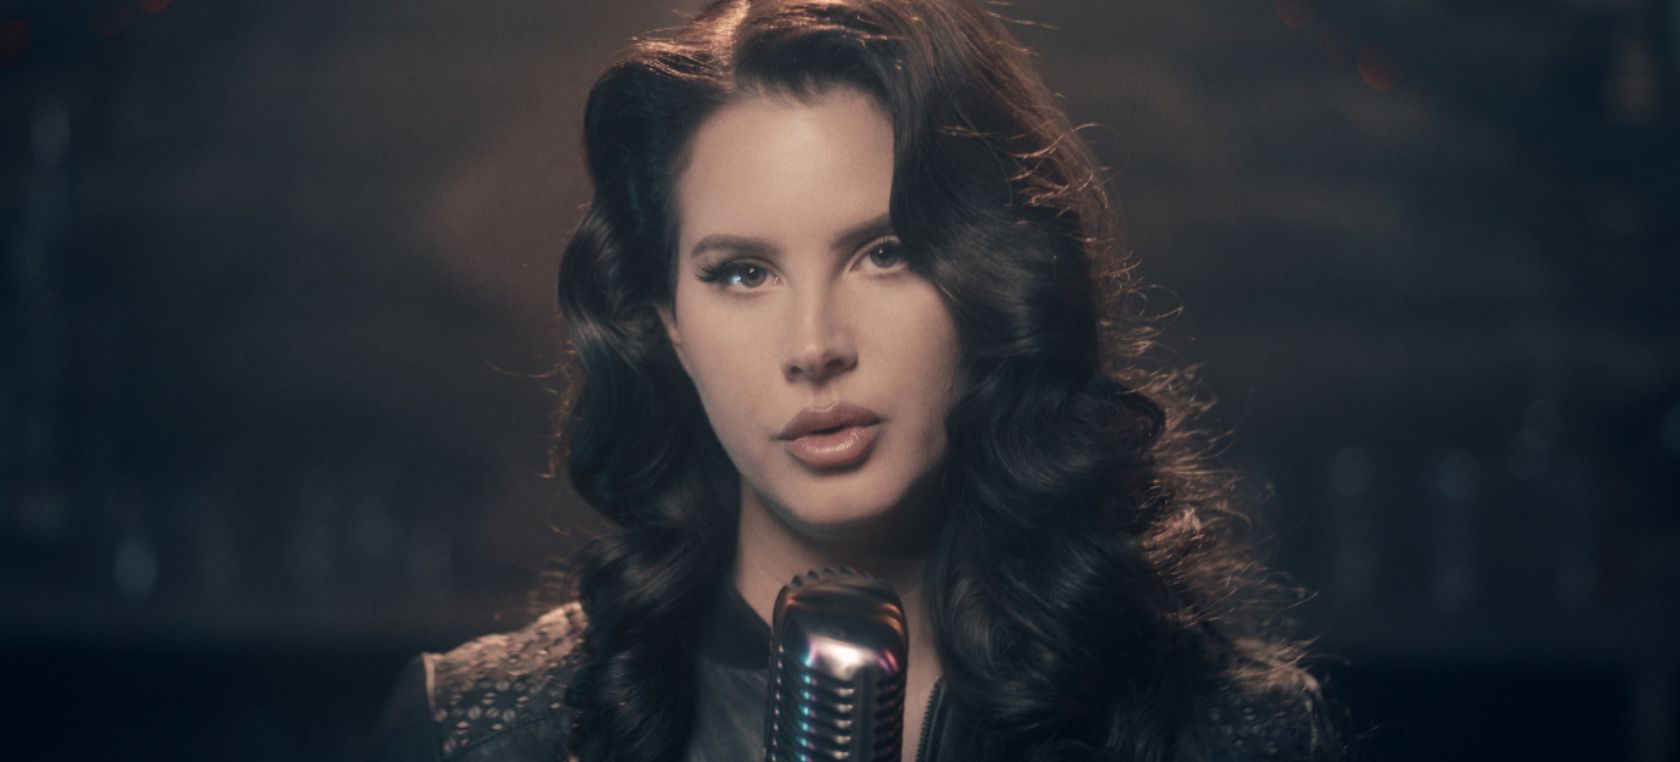 Lana Del Rey lanza tres nuevas canciones: Blue Banisters, Text Book y Wildflower Wildfire